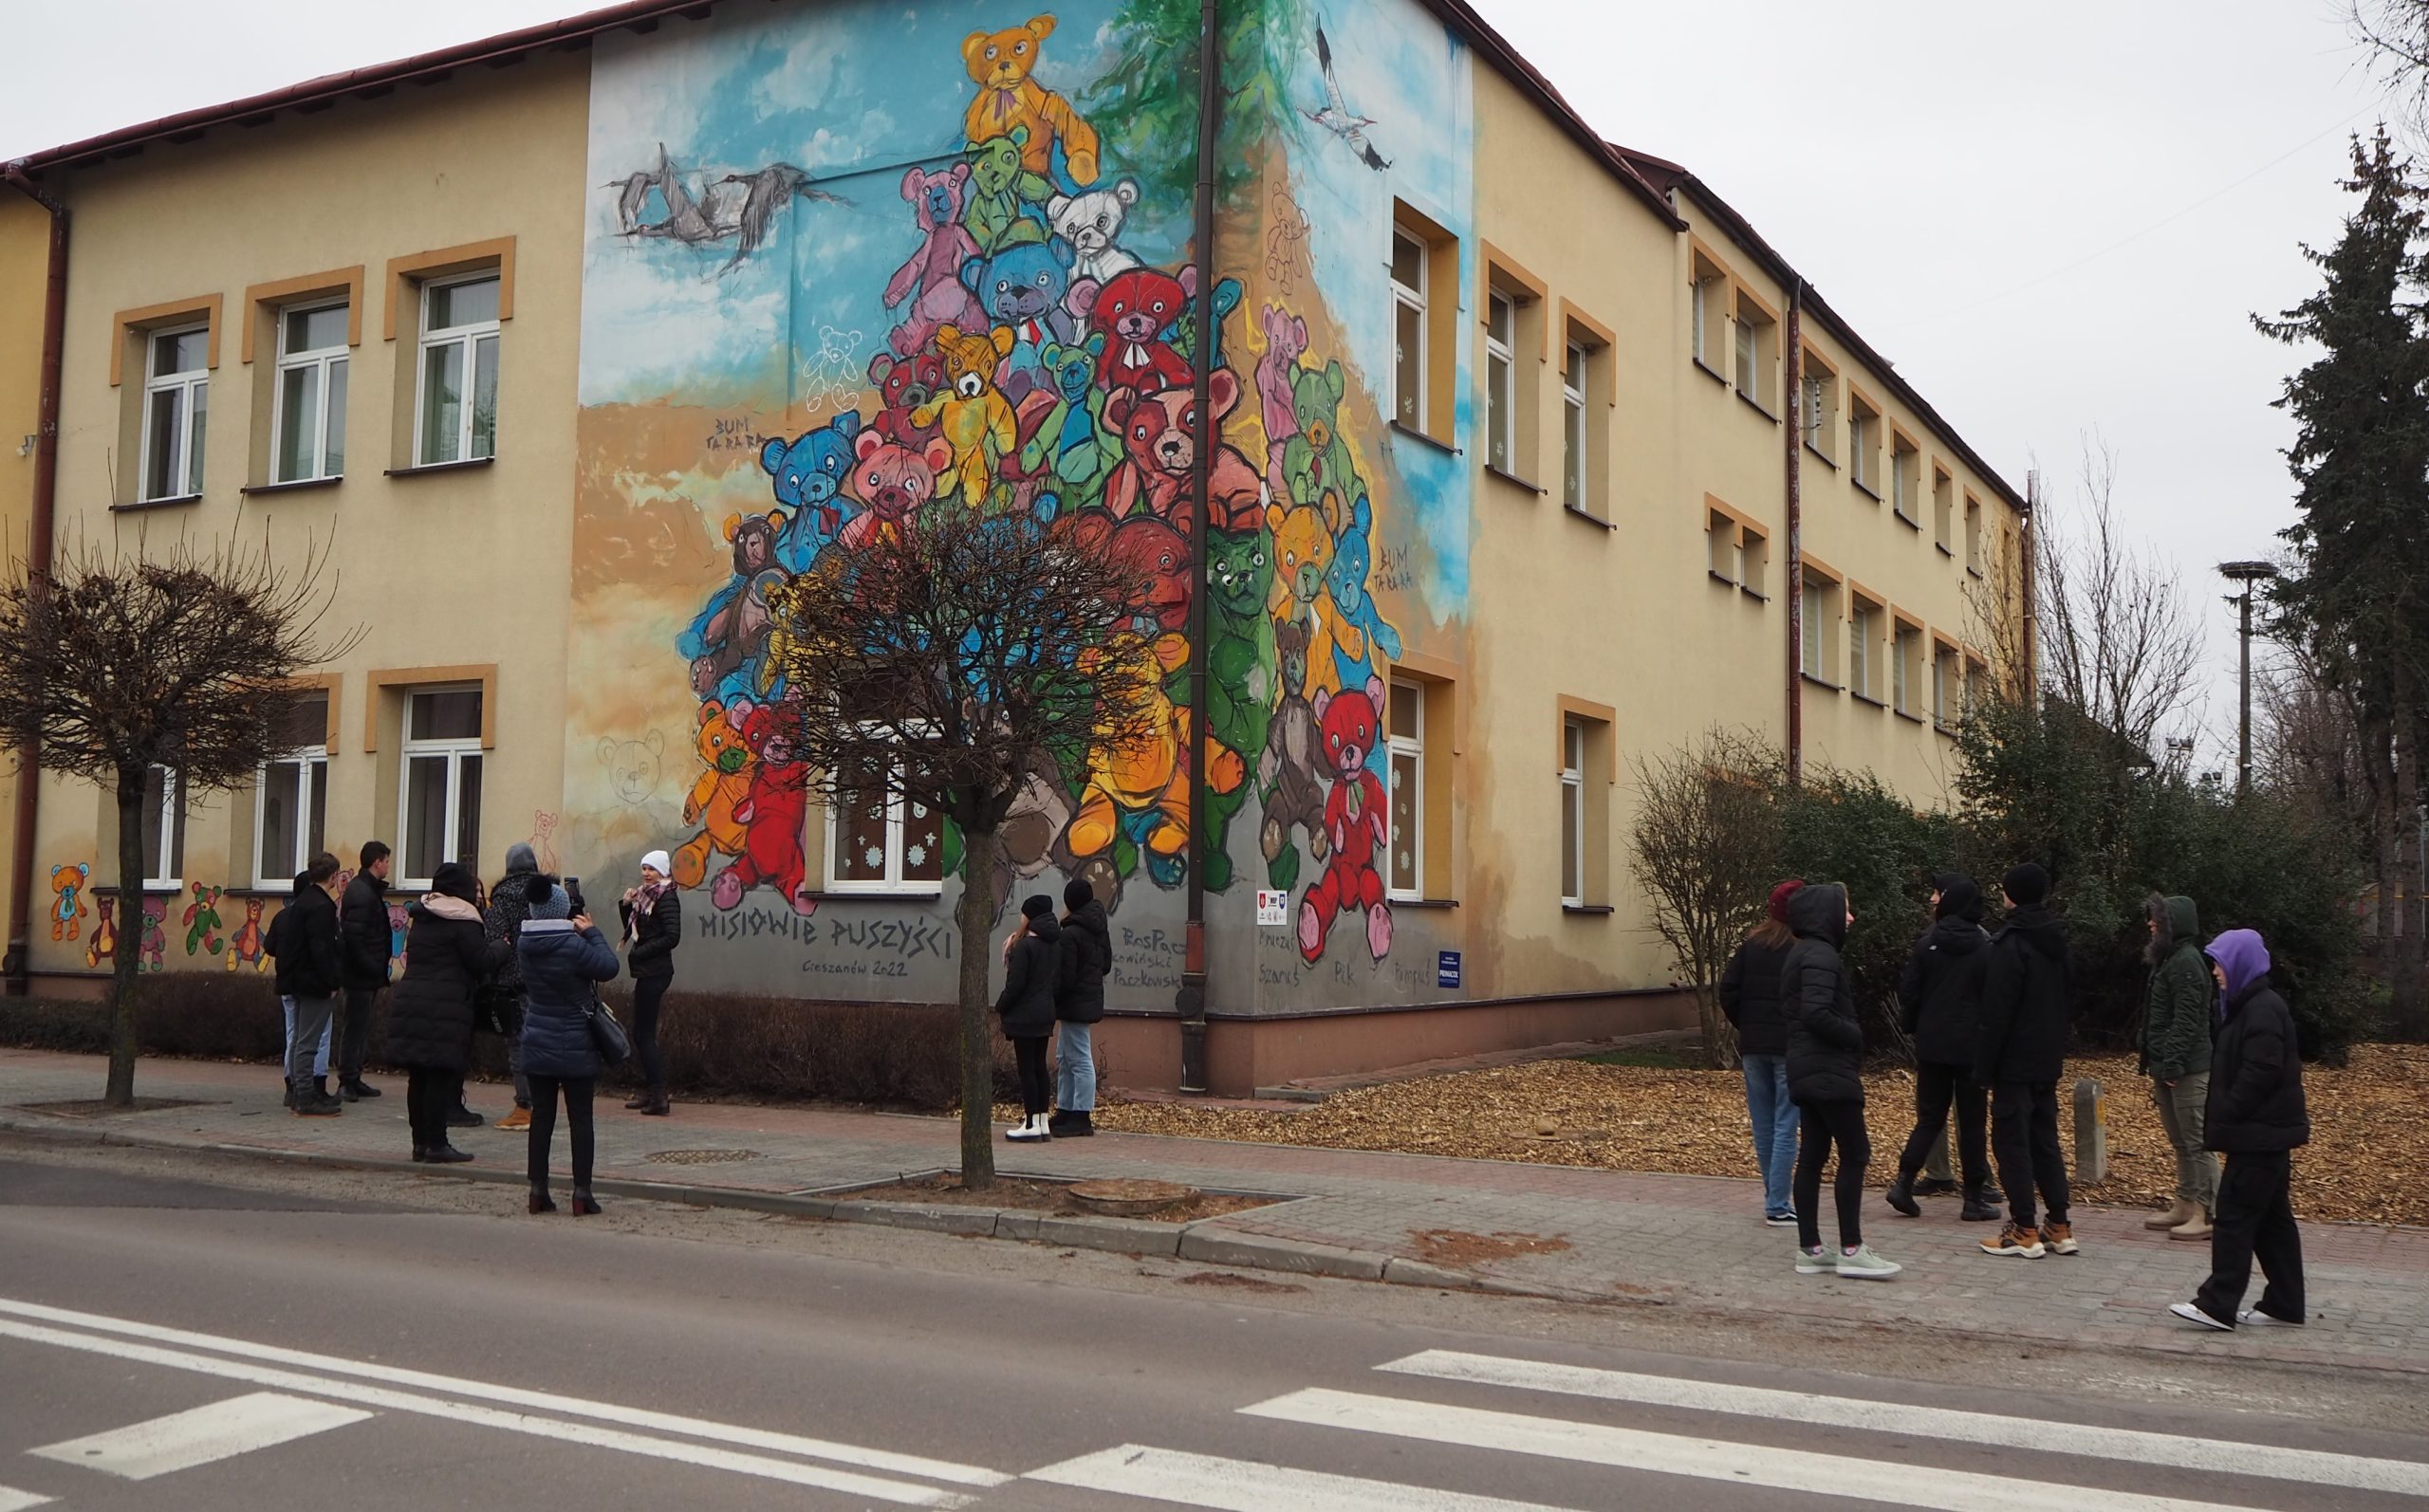 zdjęcie młodzieży przy budynku z muralem z wizerunkiem kolorowych misiów